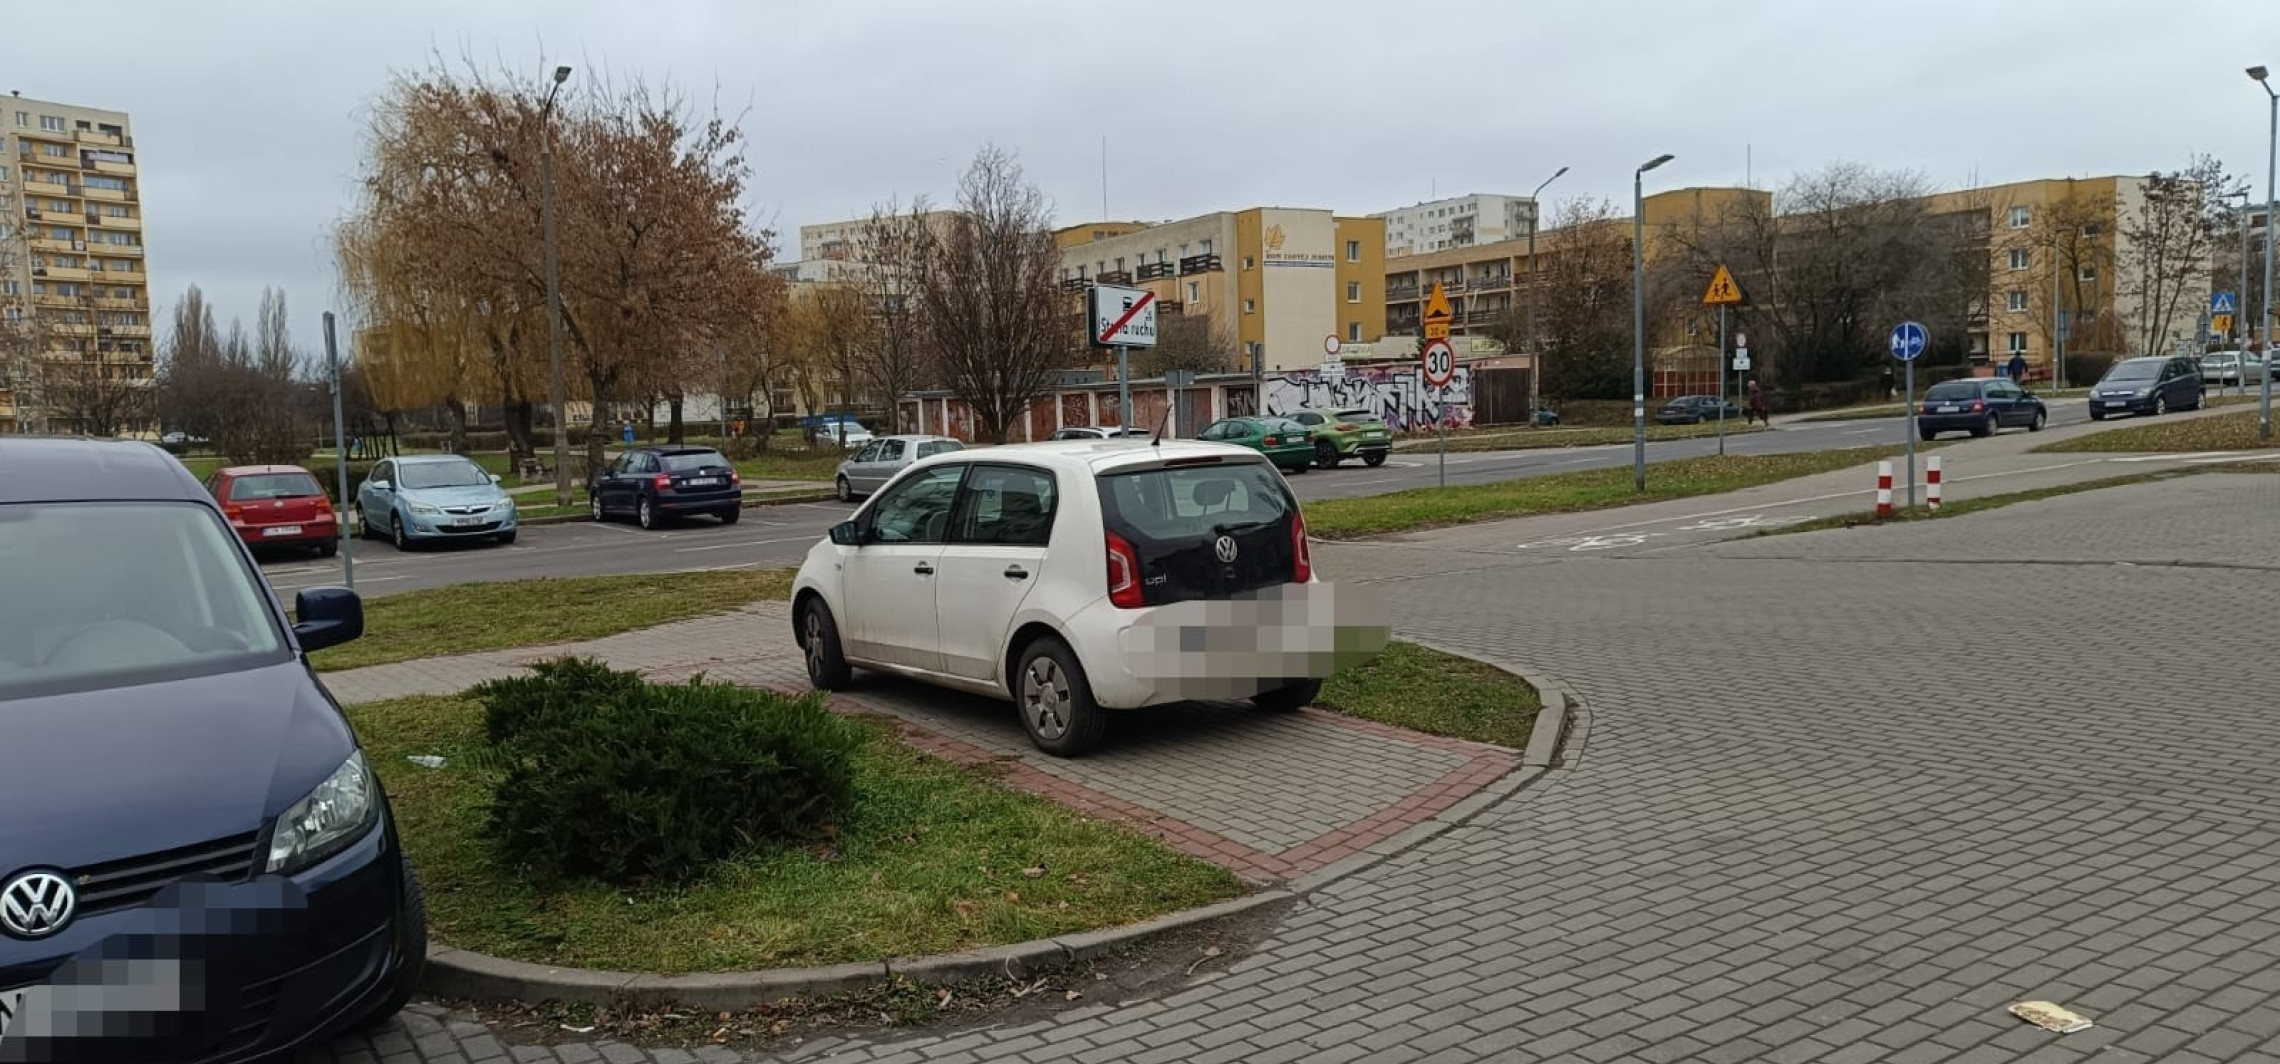 Inowrocław - Tak wygląda parkingowa samowola w mieście